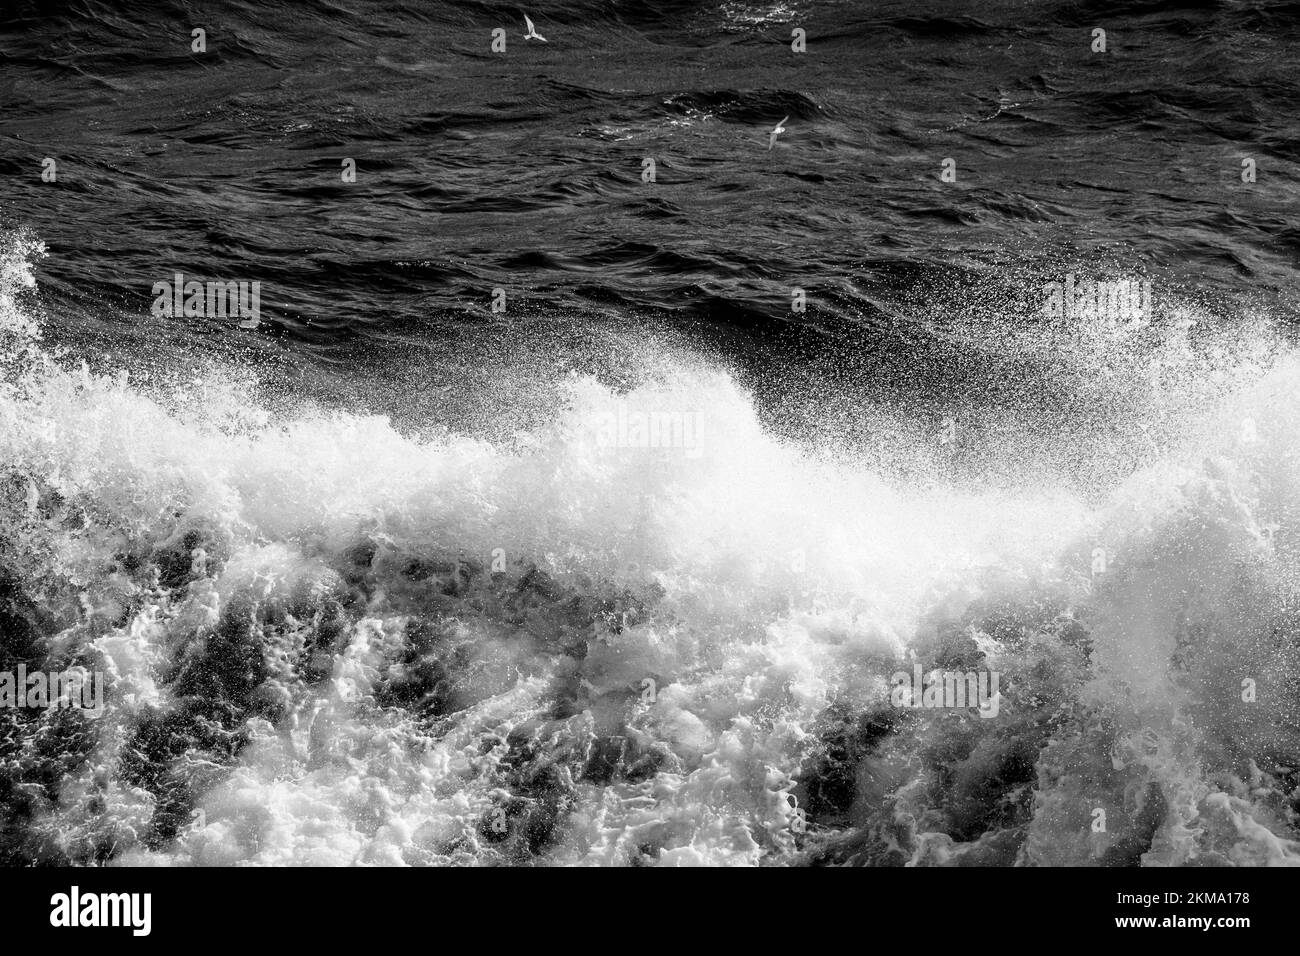 Das Boot weckt Wellen in der Drake Passage, wodurch Sprühnebel aus dem Wasser austritt. Stockfoto